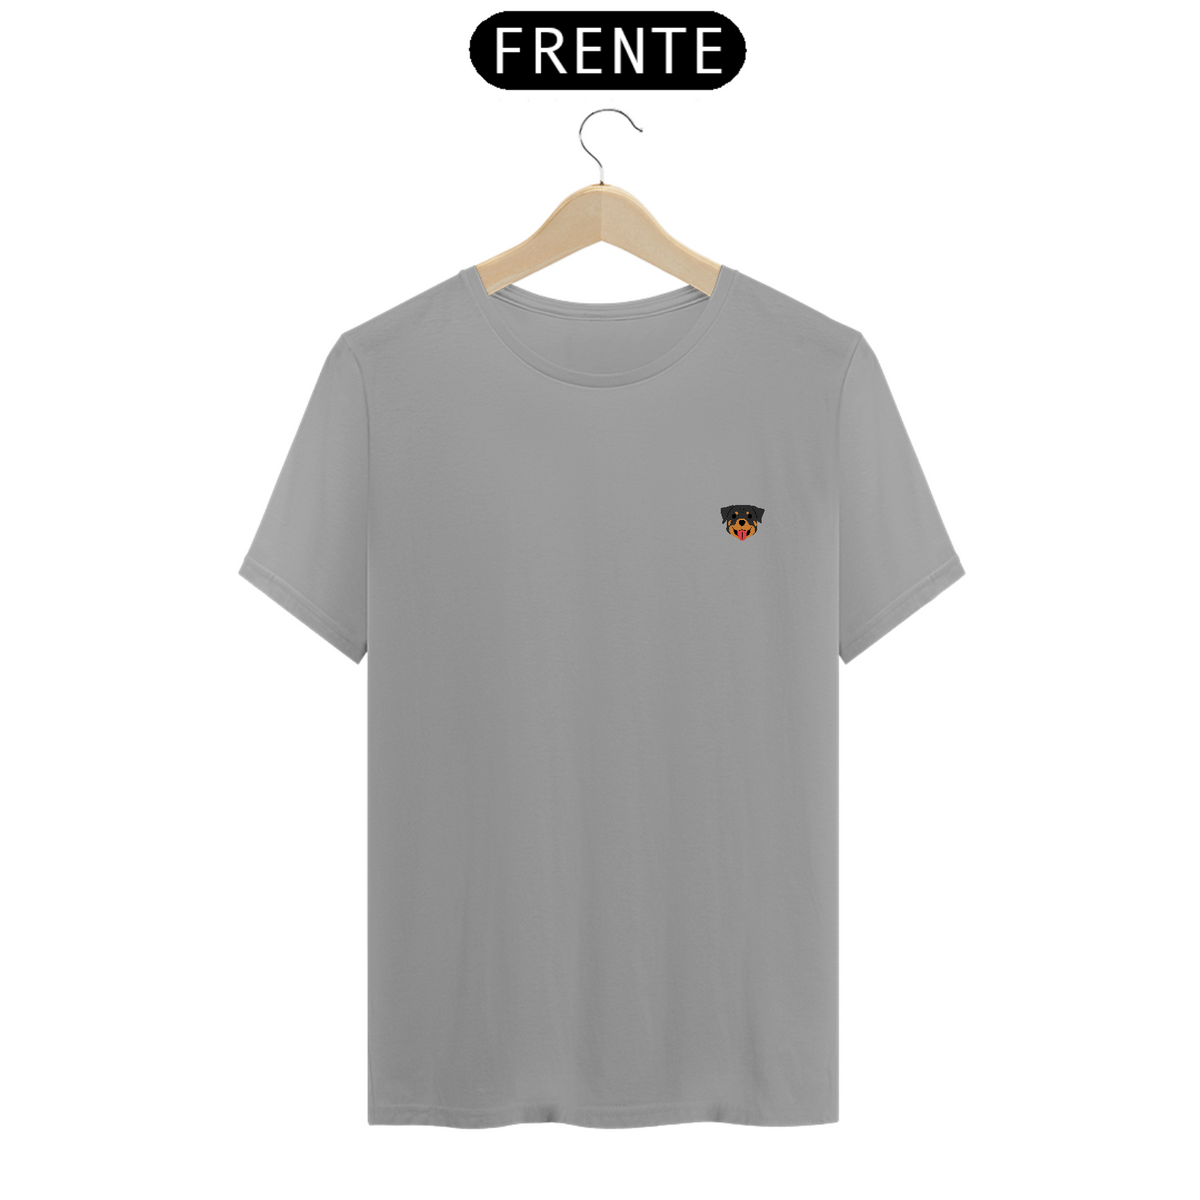 Nome do produto: Camiseta Quality - Short Rott 